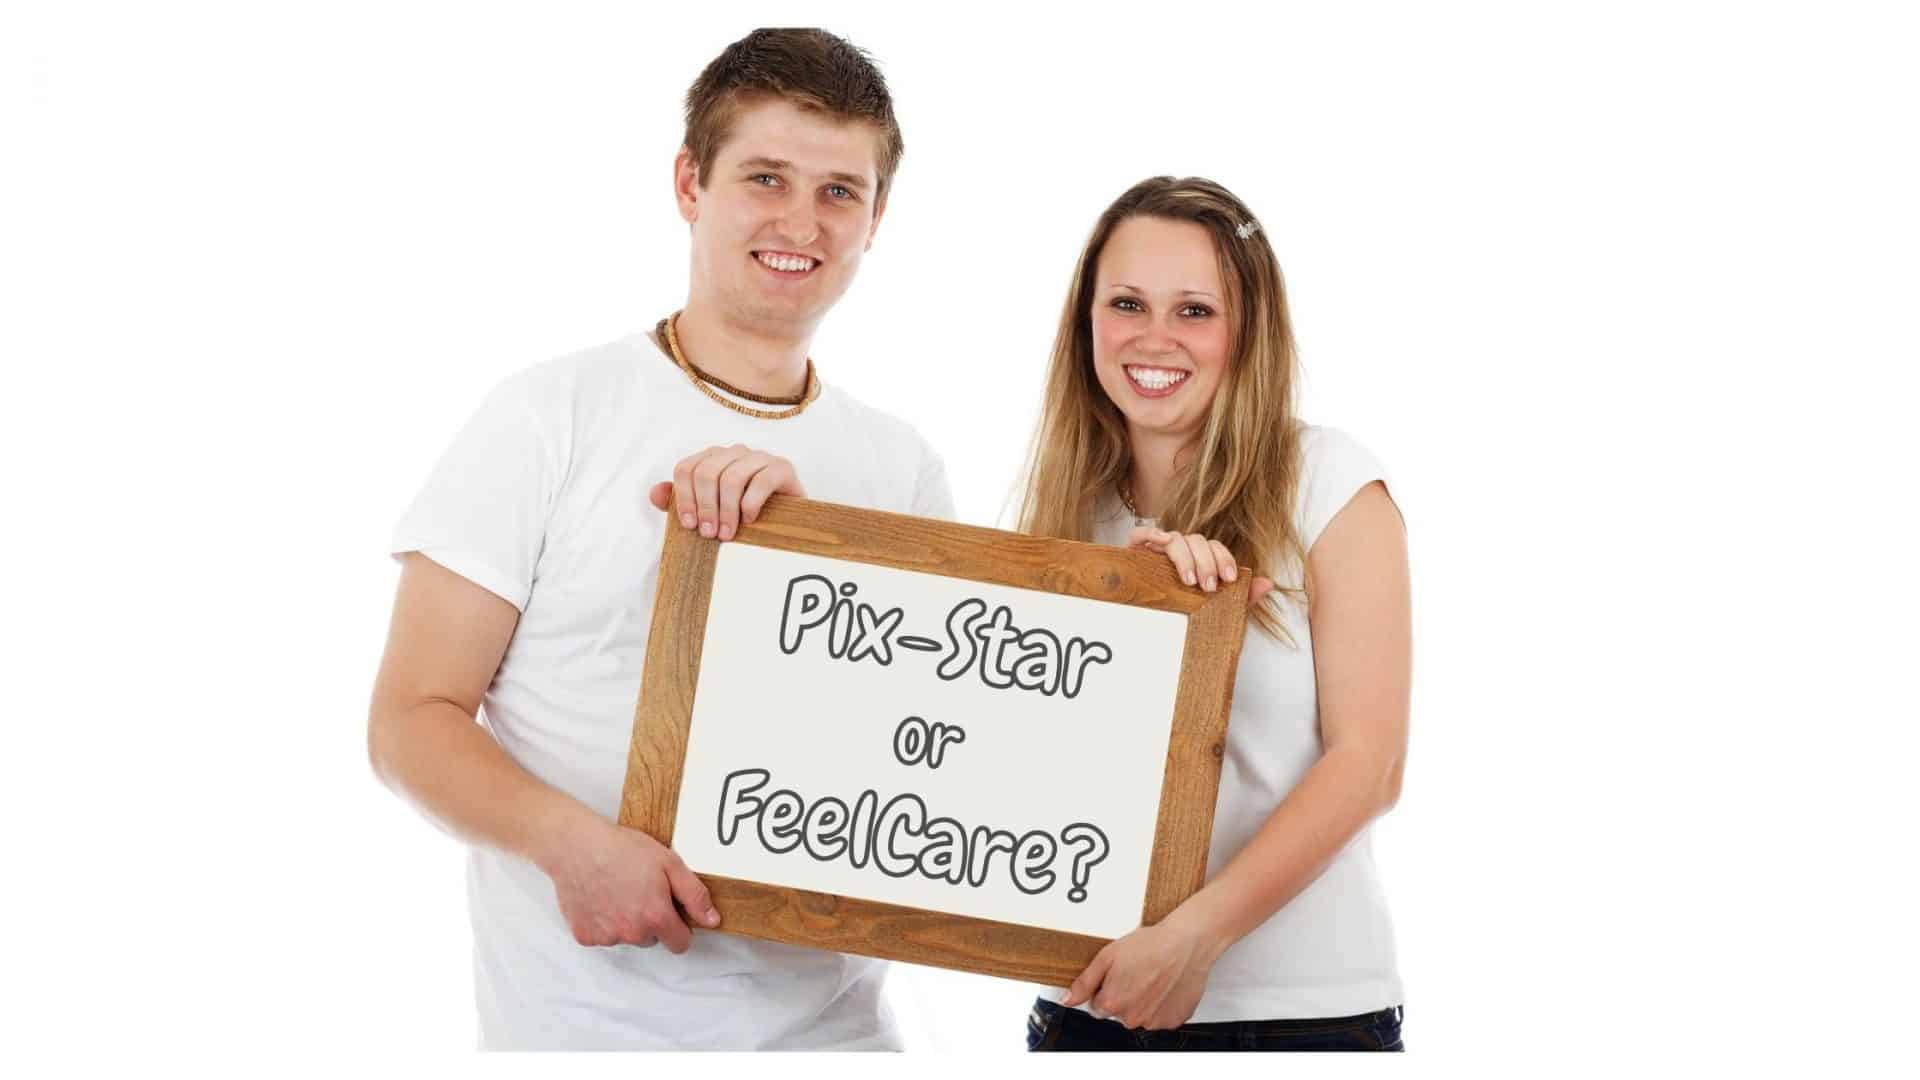 Pix-Star vs FeelCare frames